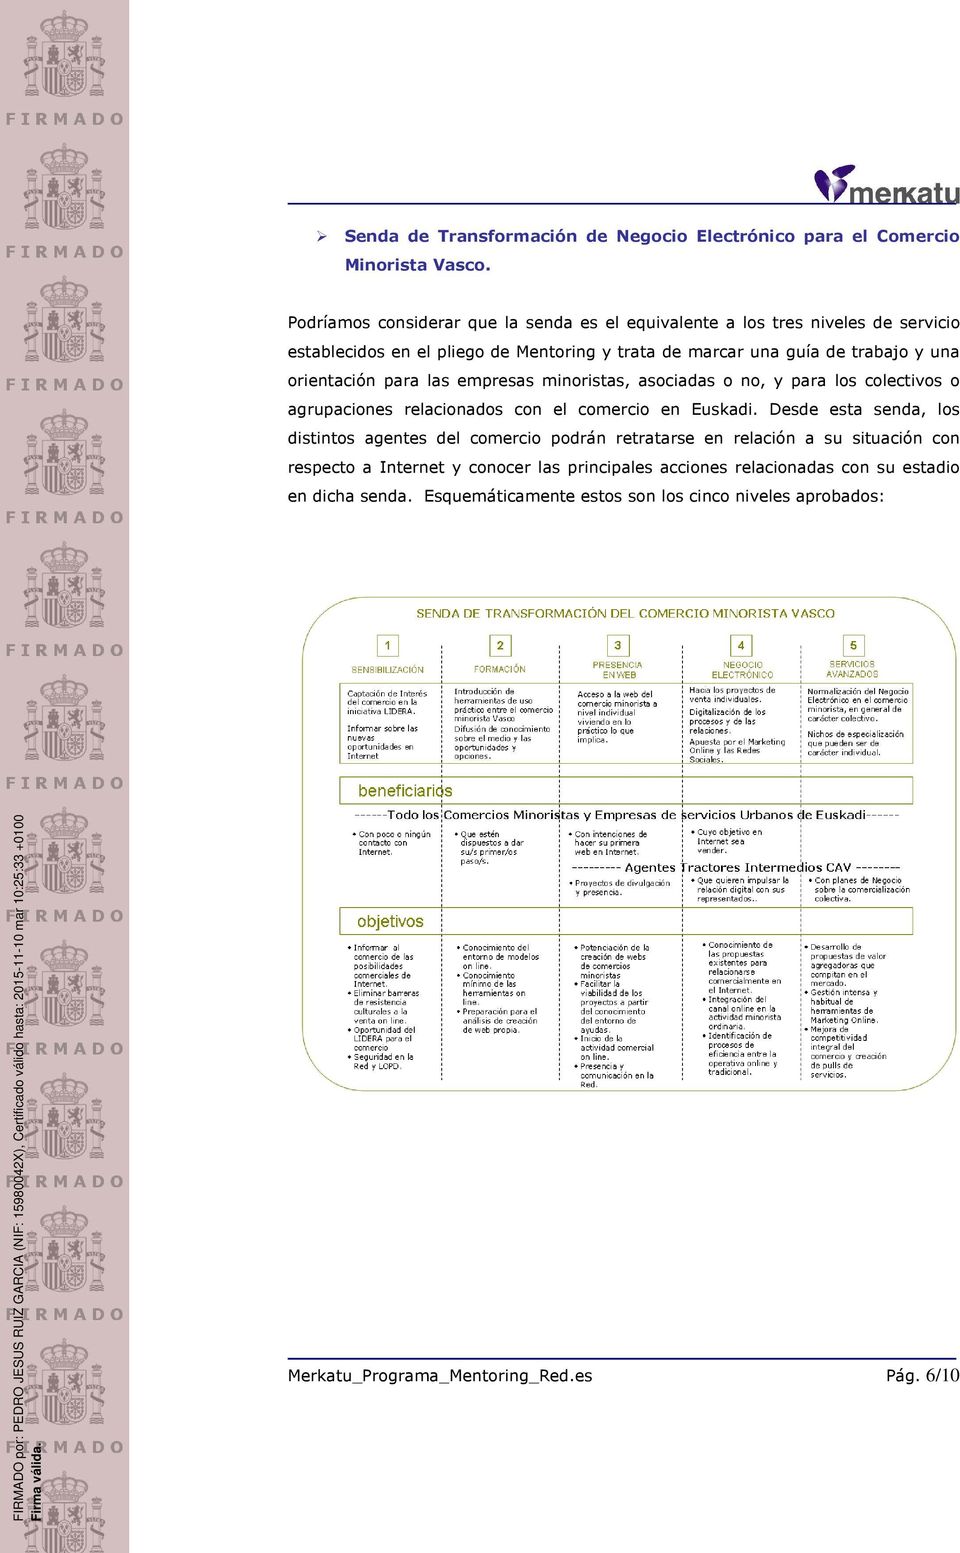 orientación para las empresas minoristas, asociadas o no, y para los colectivos o agrupaciones relacionados con el comercio en Euskadi.